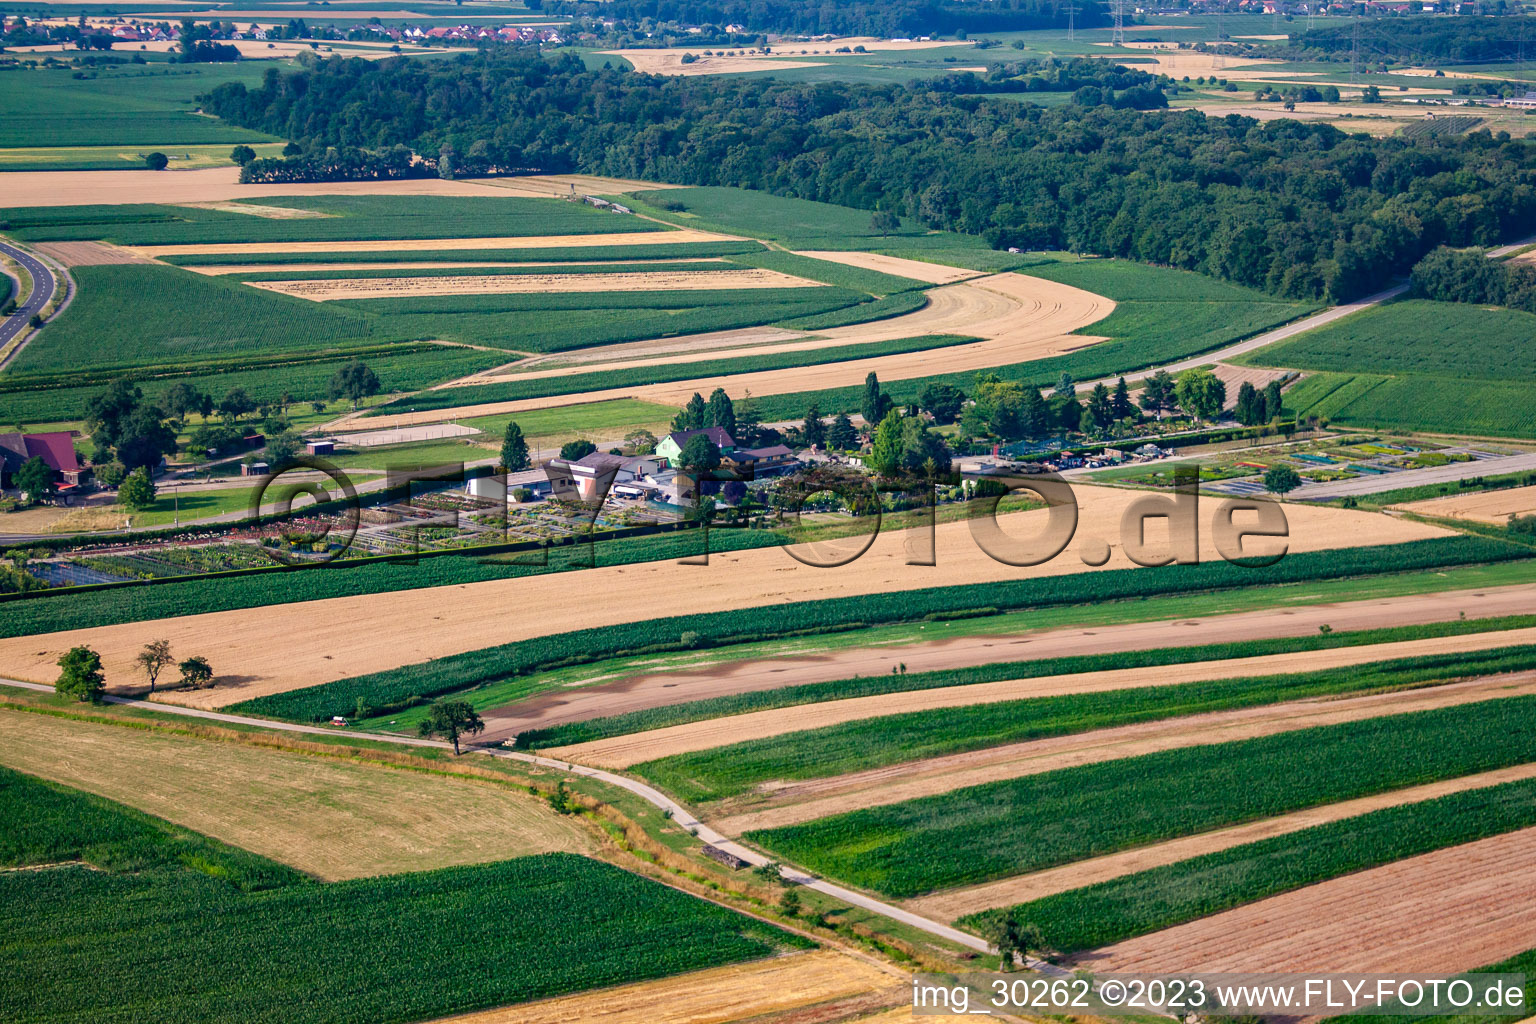 Gartenzeiten Schwarz im Ortsteil Bodersweier in Kehl im Bundesland Baden-Württemberg, Deutschland aus der Drohnenperspektive